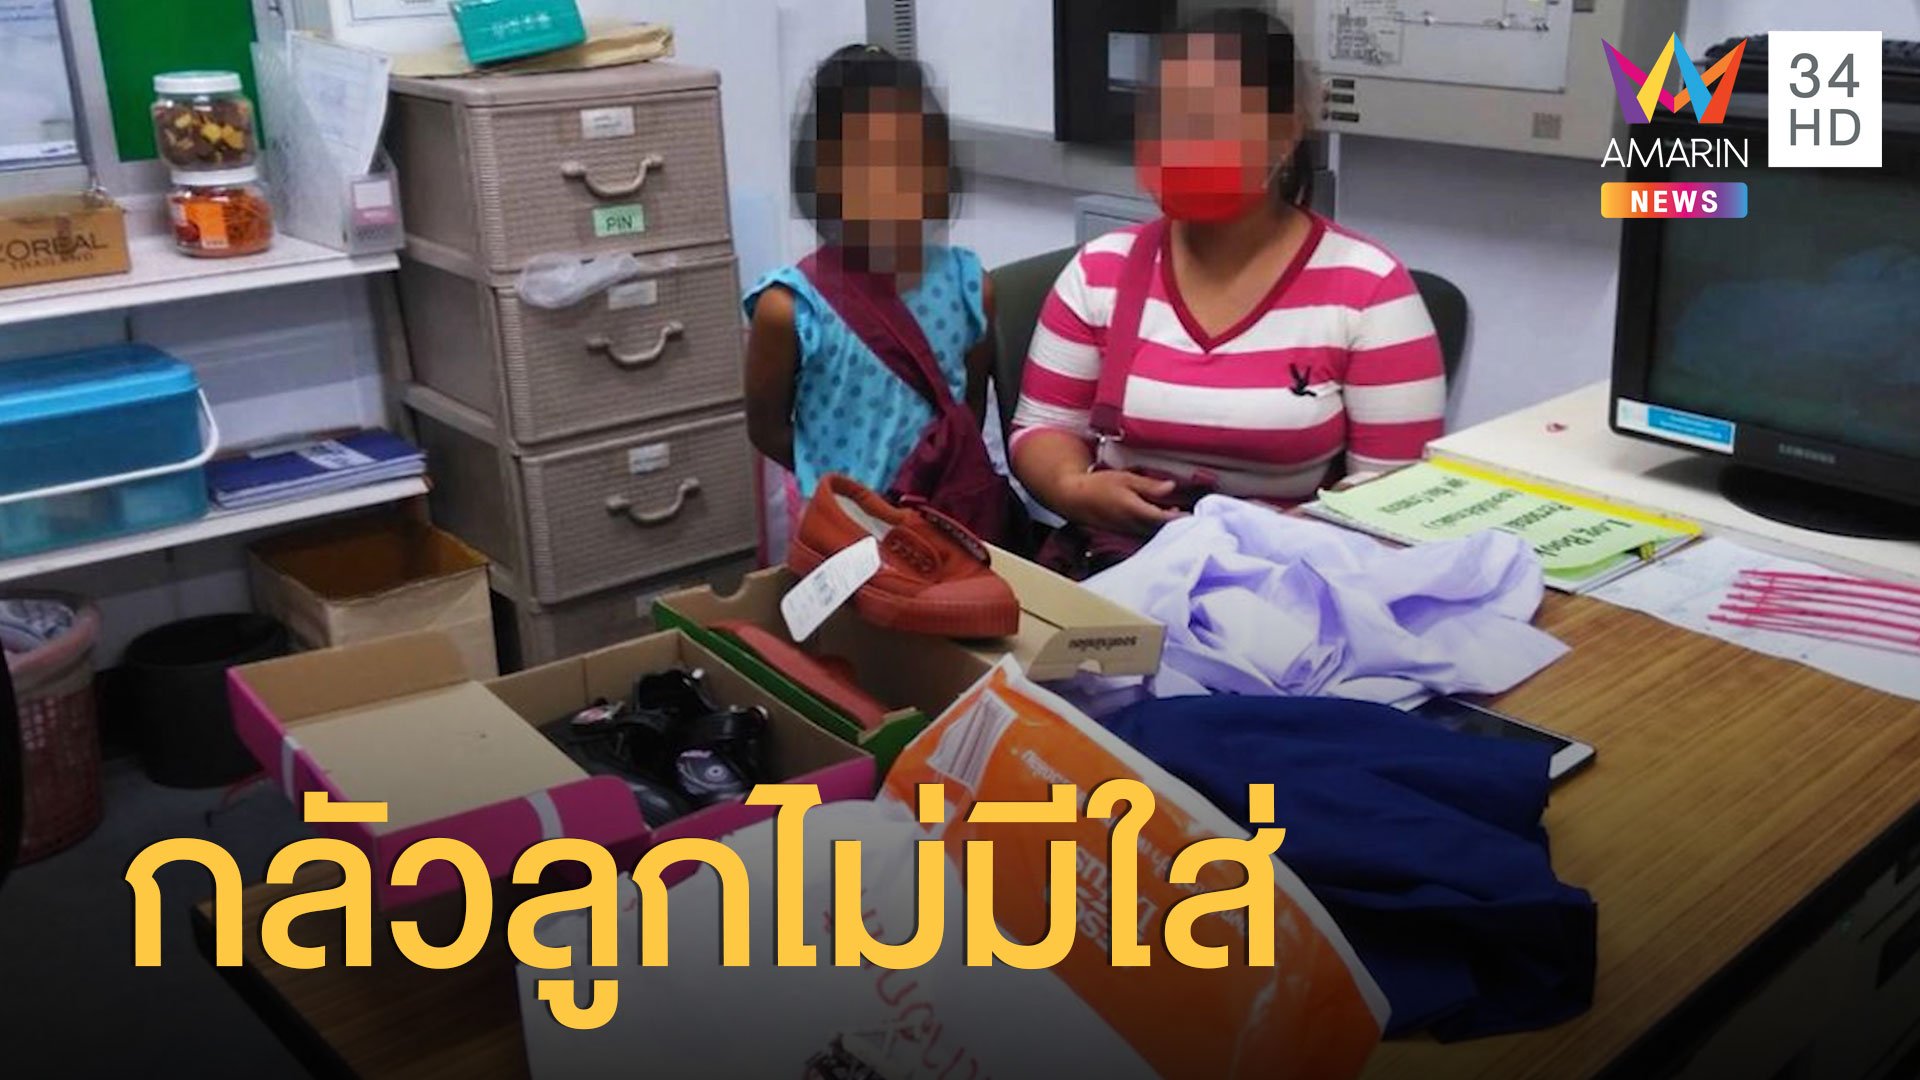 แม่ขโมยชุดนักเรียนให้ลูก ตำรวจเห็นใจซื้อให้ ไม่เอาความ | ข่าวอรุณอมรินทร์ | 1 ก.ค. 63 | AMARIN TVHD34